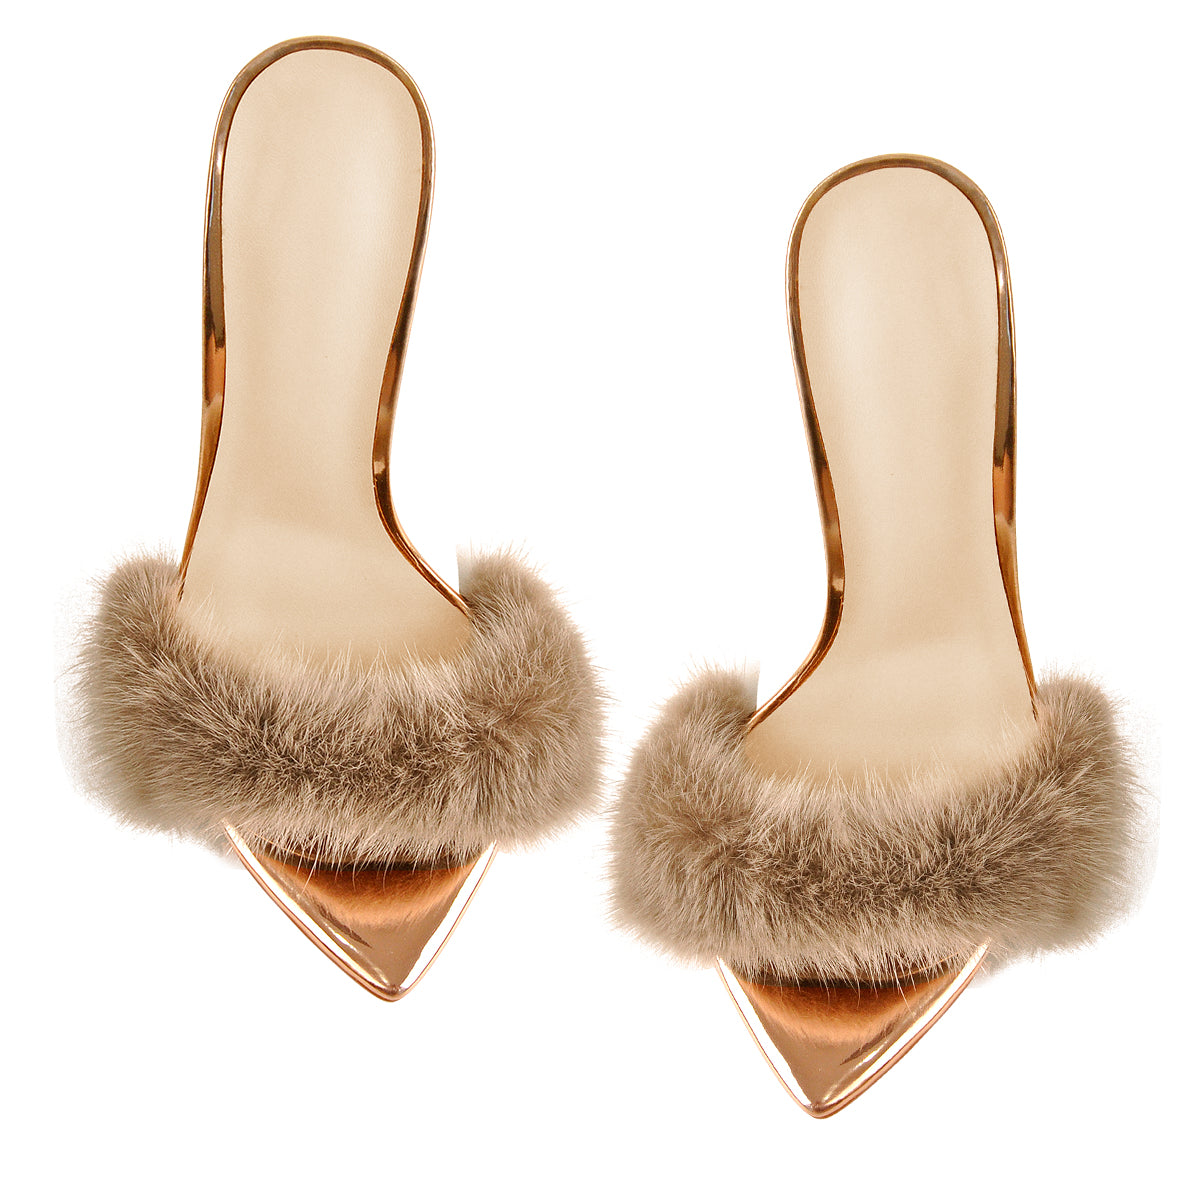 12cm Rose Gold Feather High Heel Stilettos Sandals – Onlymaker